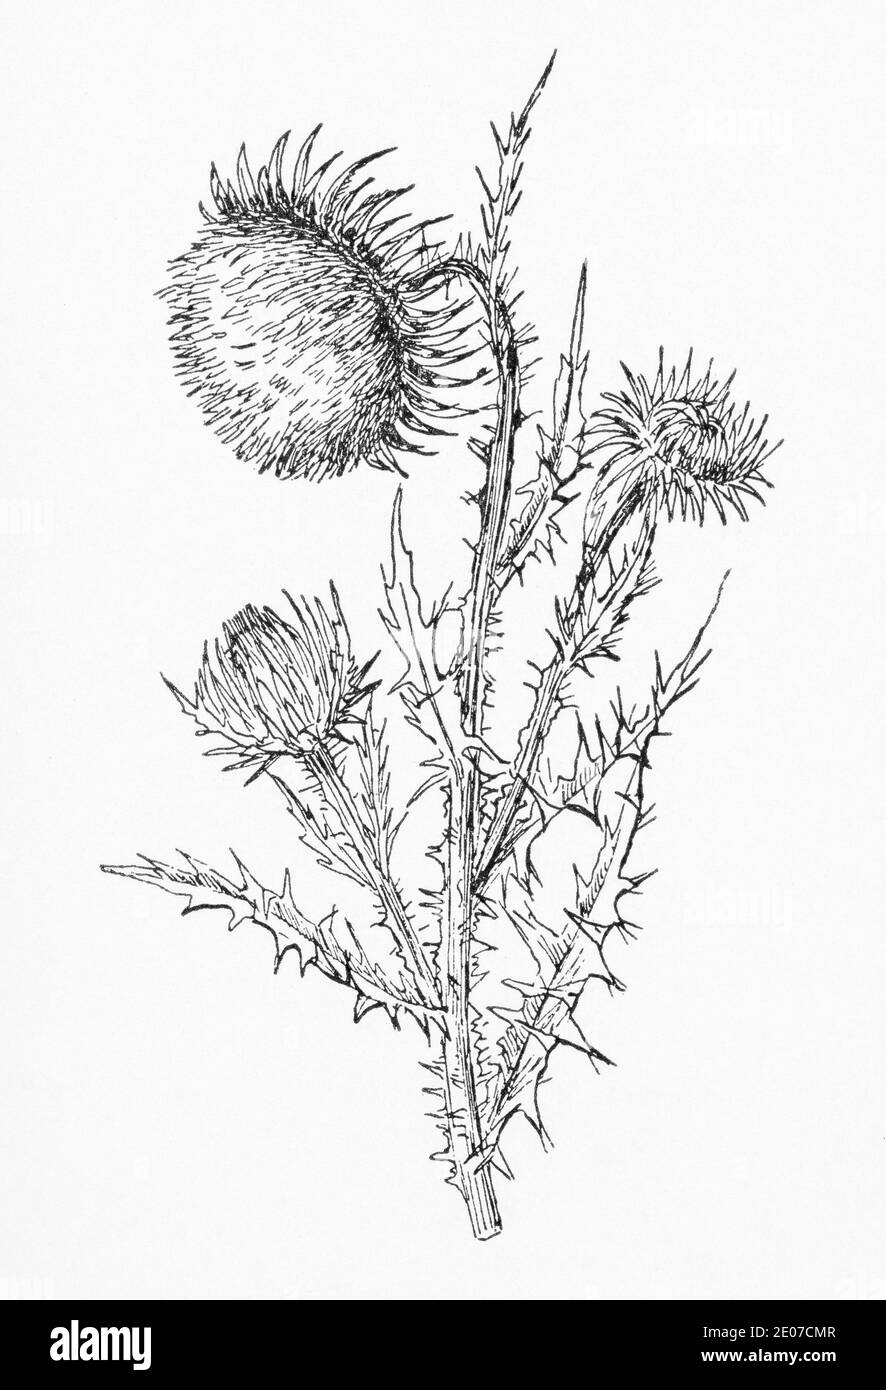 Alte botanische Illustration Gravur von Musk Thistle / Carduus nutans. Traditionelle Heilkräuter Pflanze. Siehe Hinweise Stockfoto